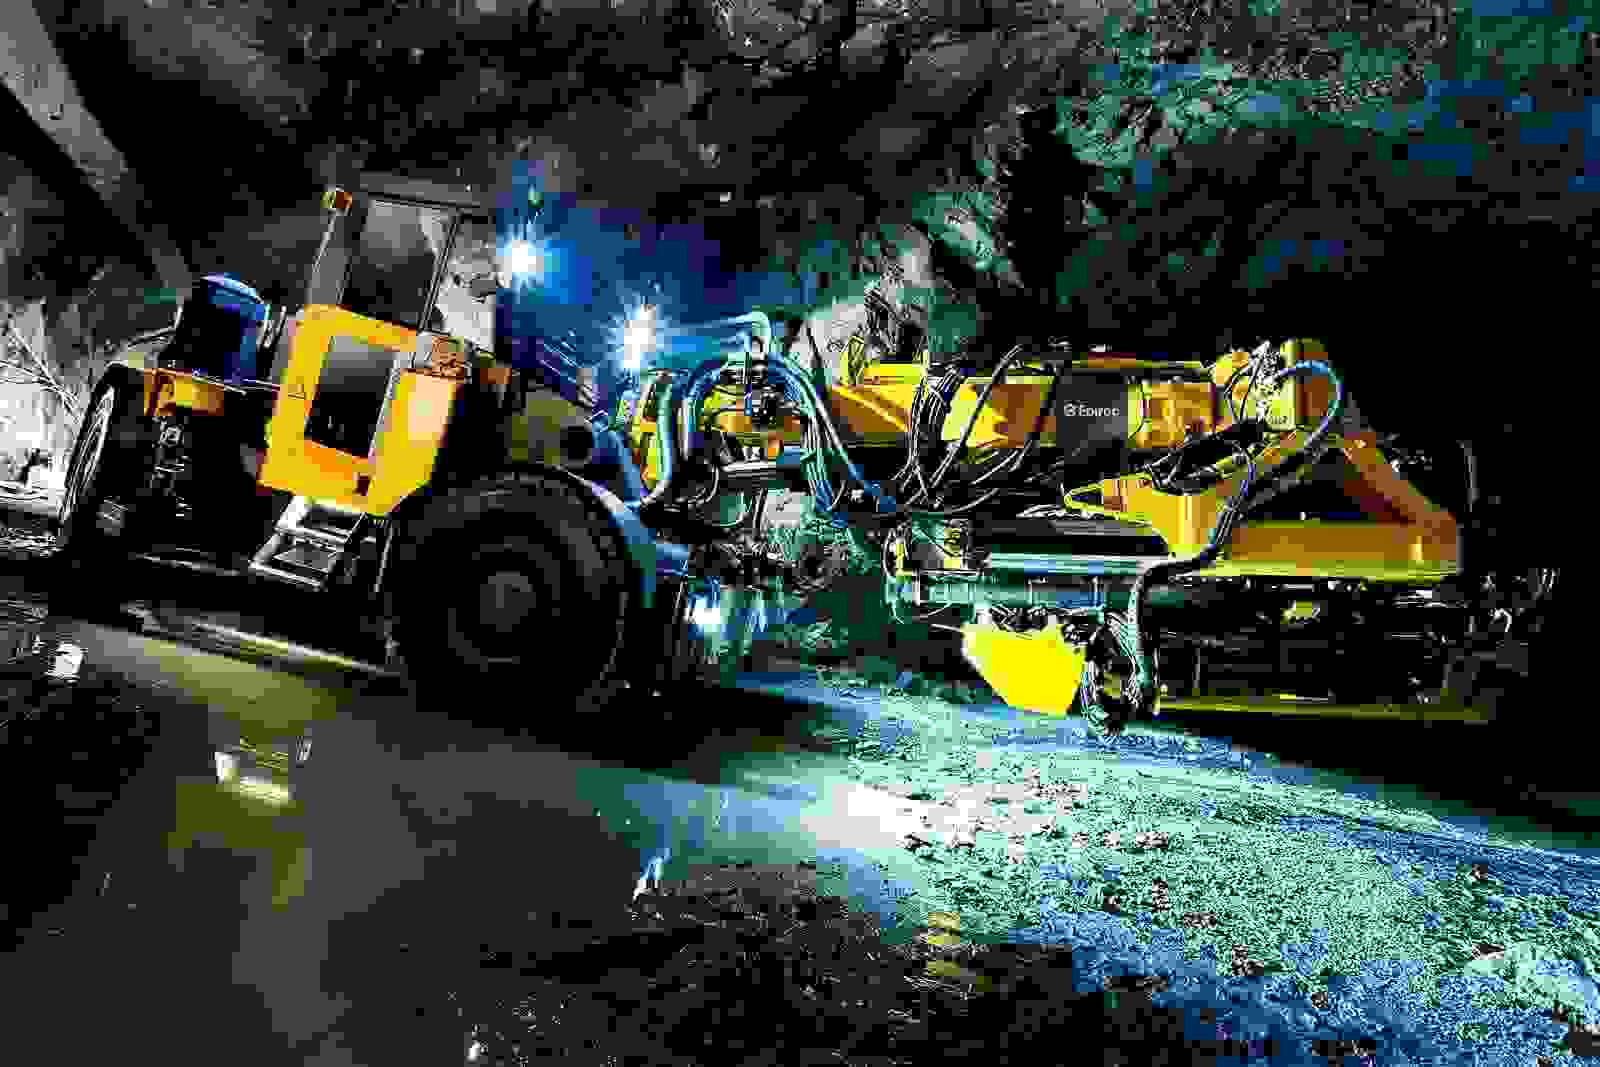 vehiculos automonomos en mineria subterranea